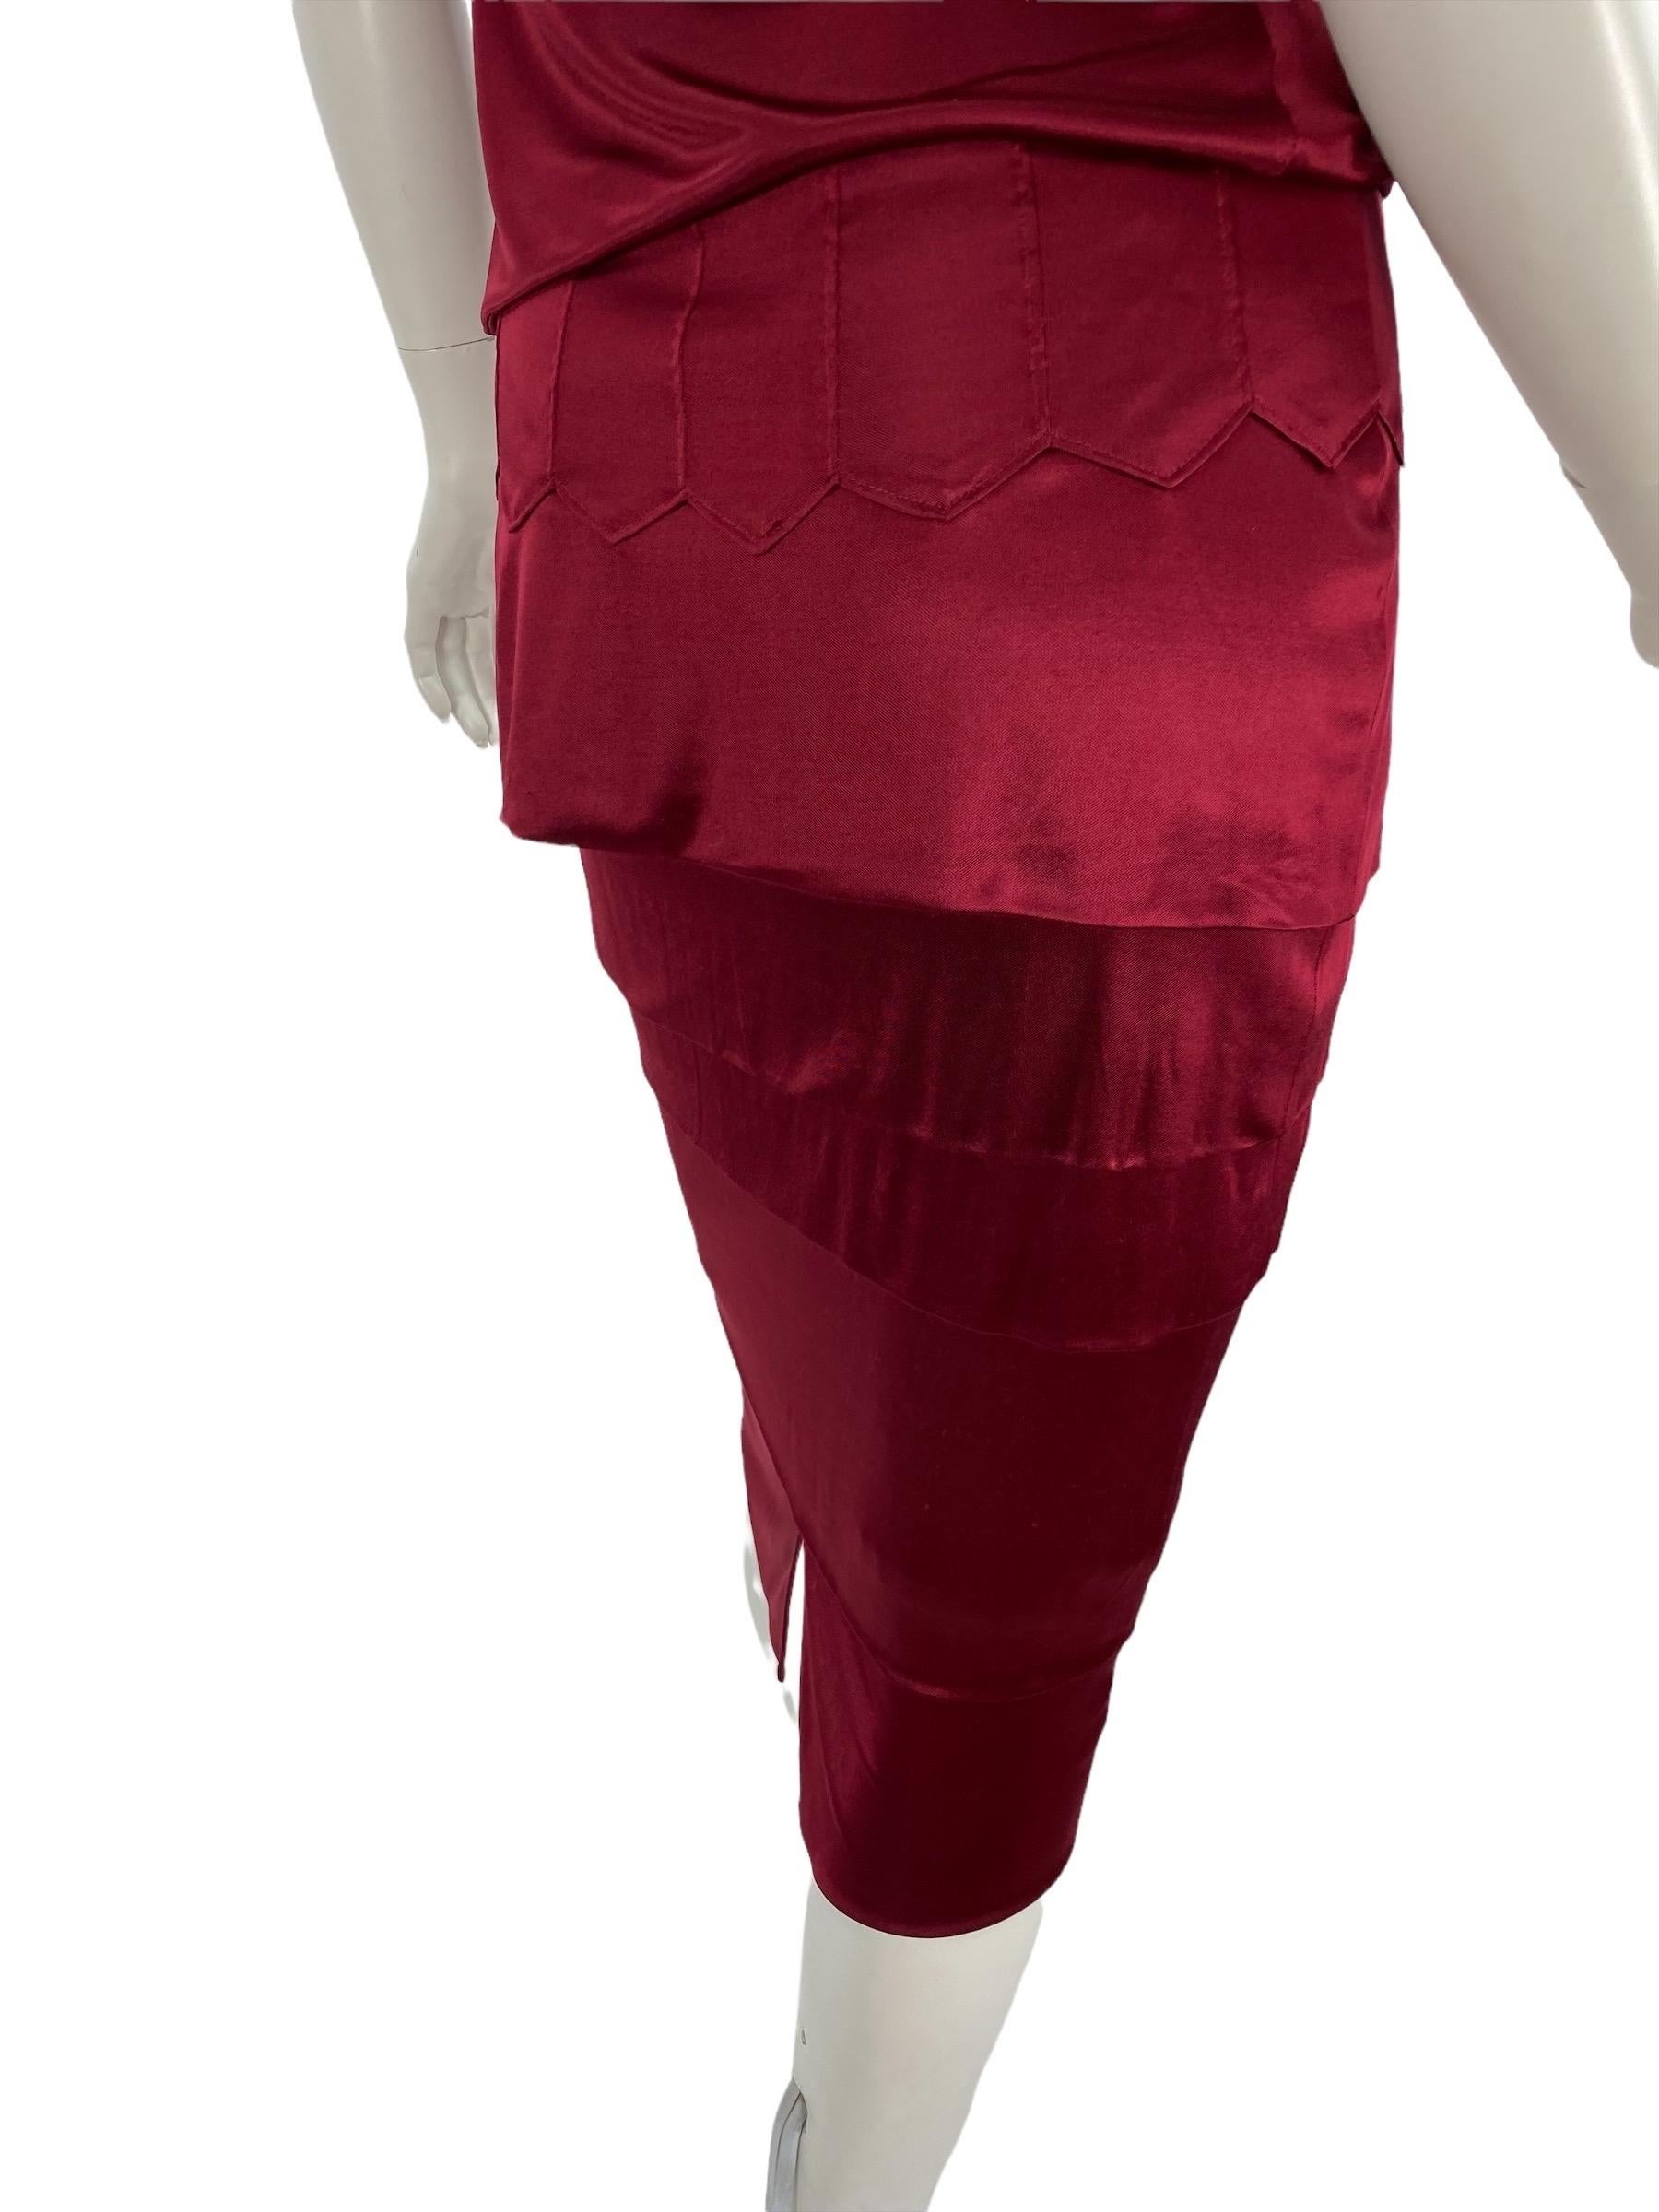 Tom Ford for YSL - Tailleur jupe en jersey rouge bordeaux, taille S, automne-hiver 2004 Pour femmes en vente